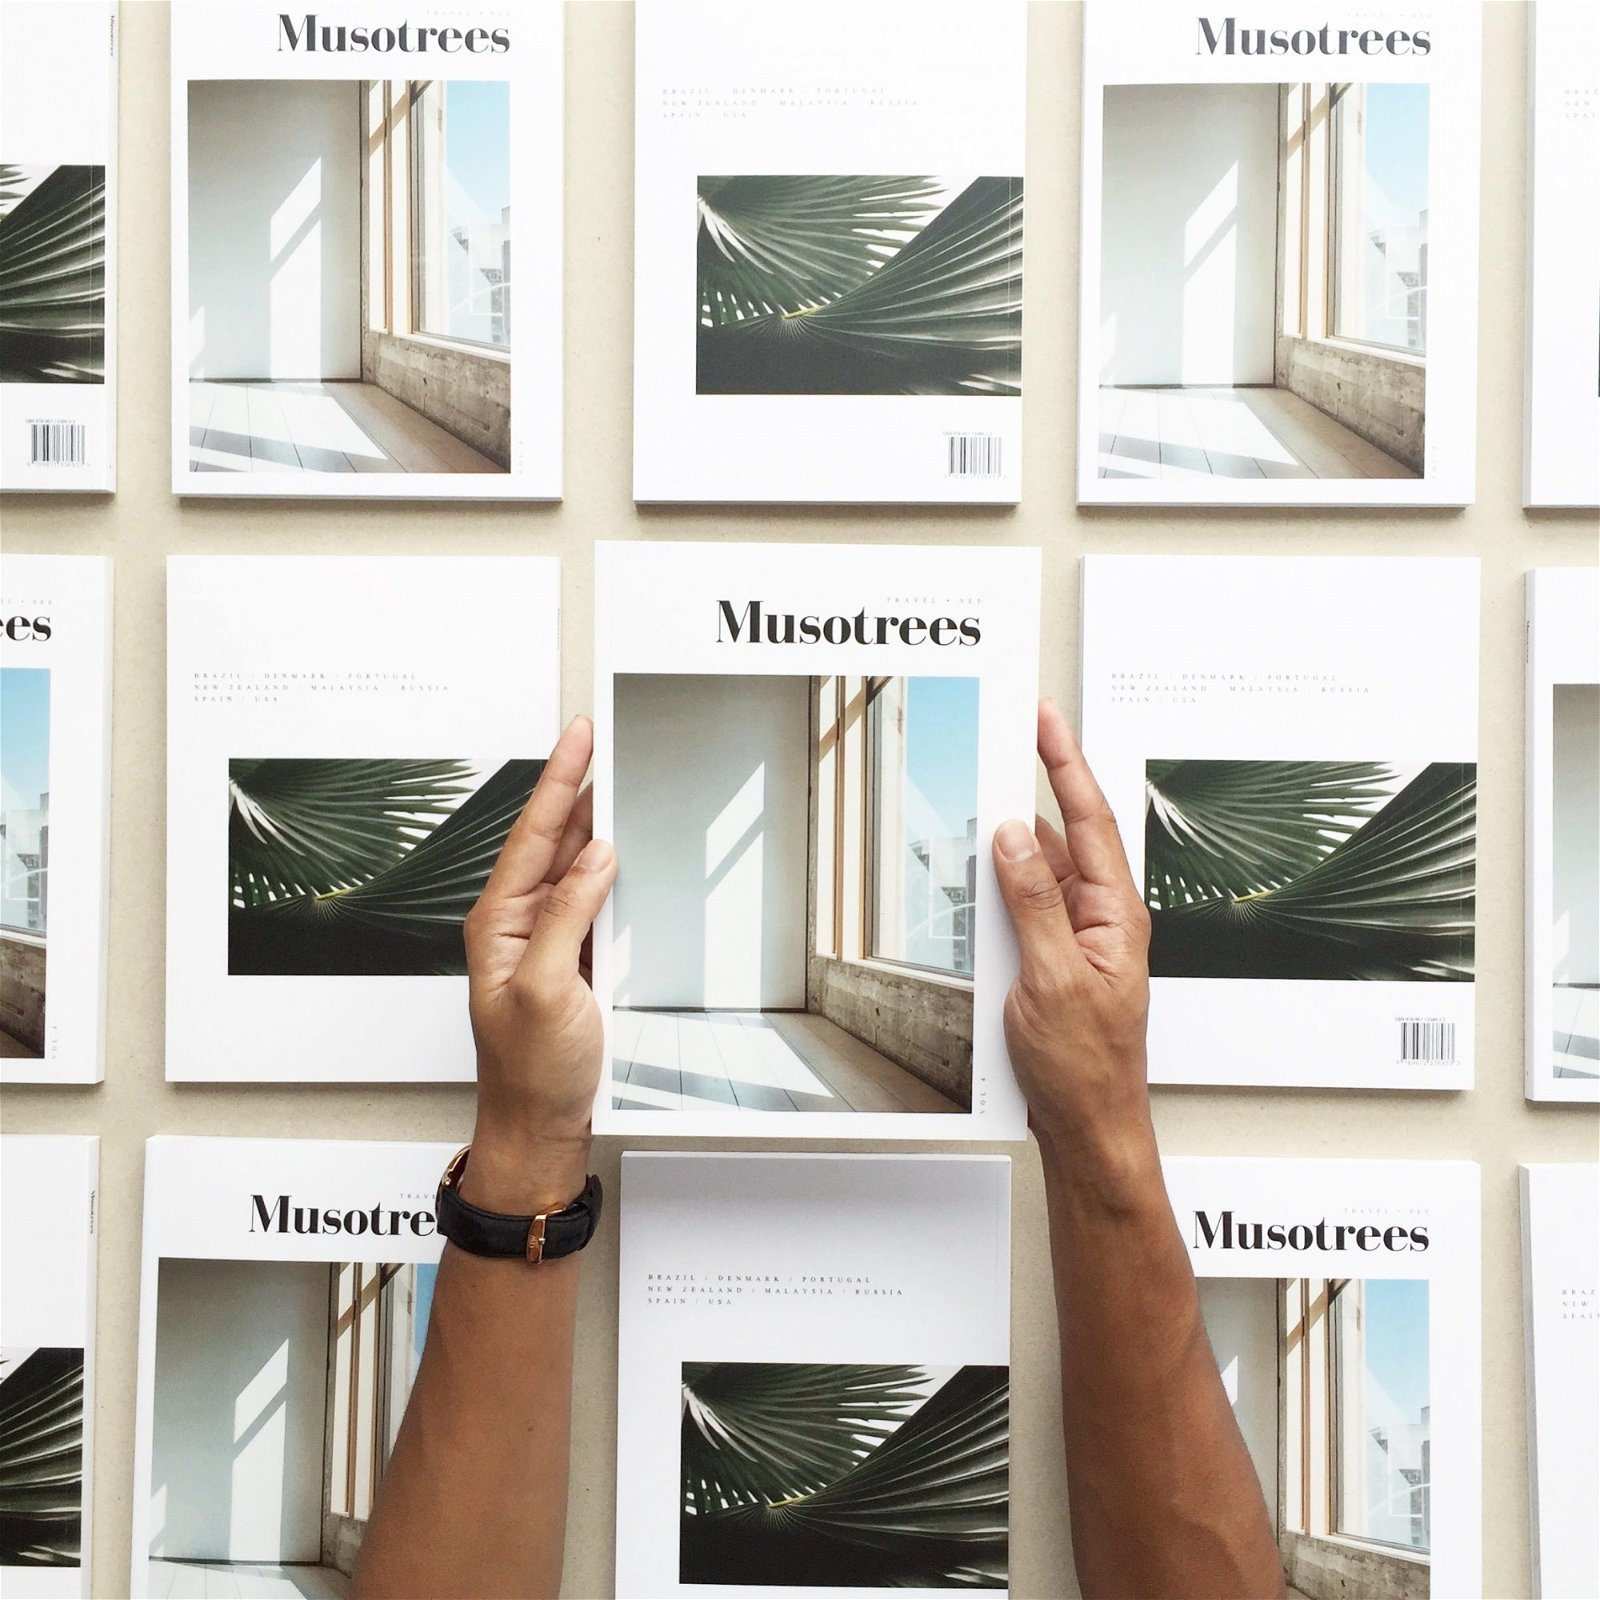 凯洛认为，《Musotrees》既是一本杂志，也可以被看作一本书，“读者通常是旅人、设计师、咖啡爱好者，一般上是钟情于美学和质感的人，书籍收藏者也可能会喜欢它。”